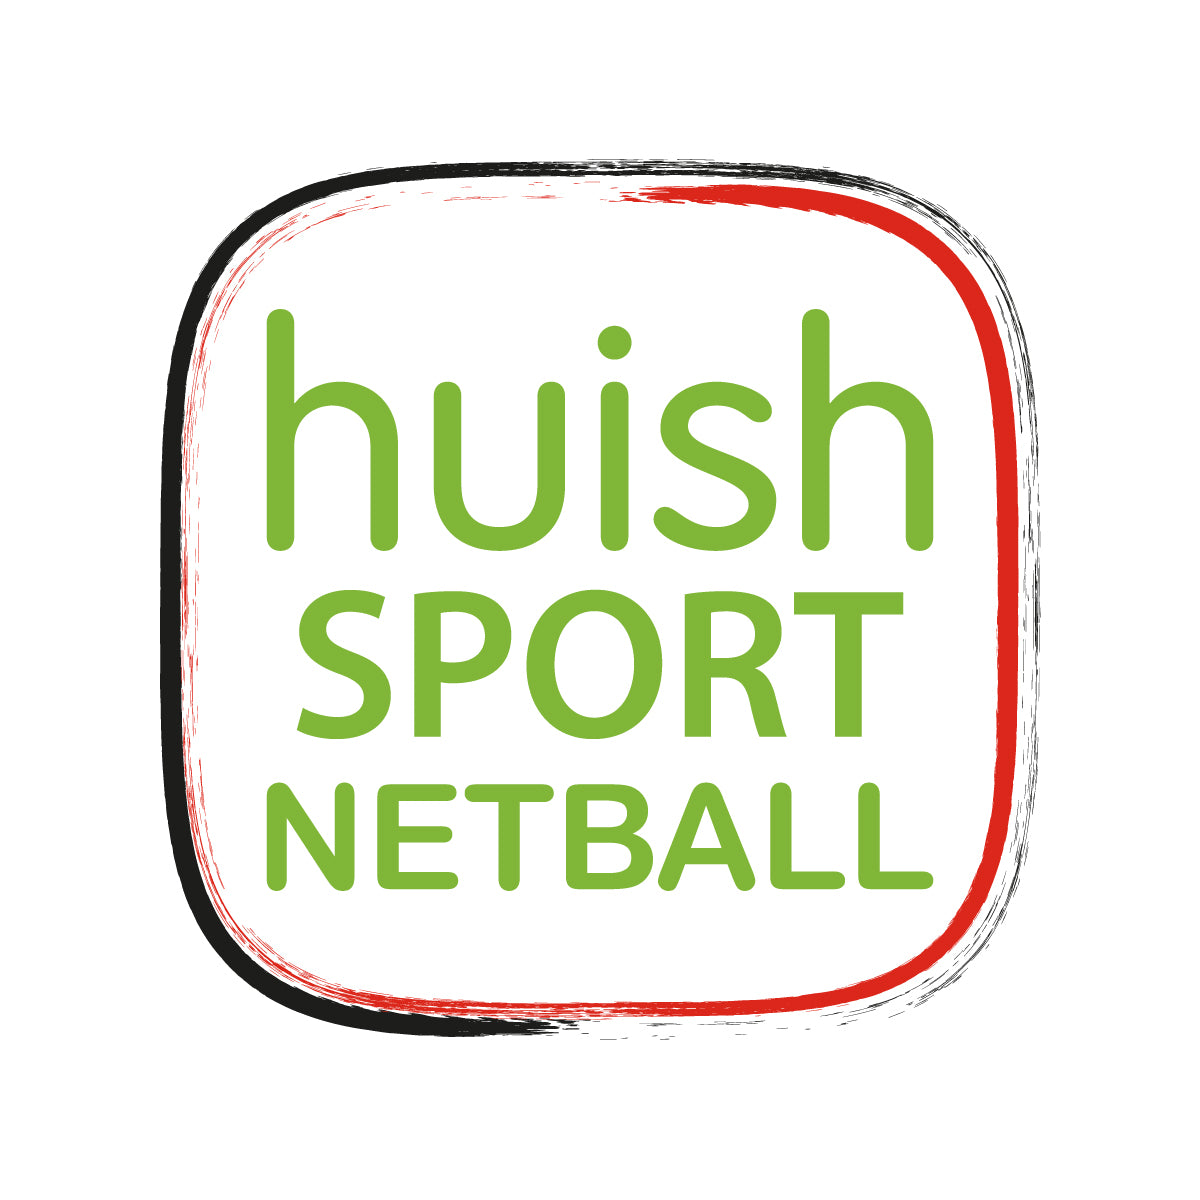 Huish Sport Netball